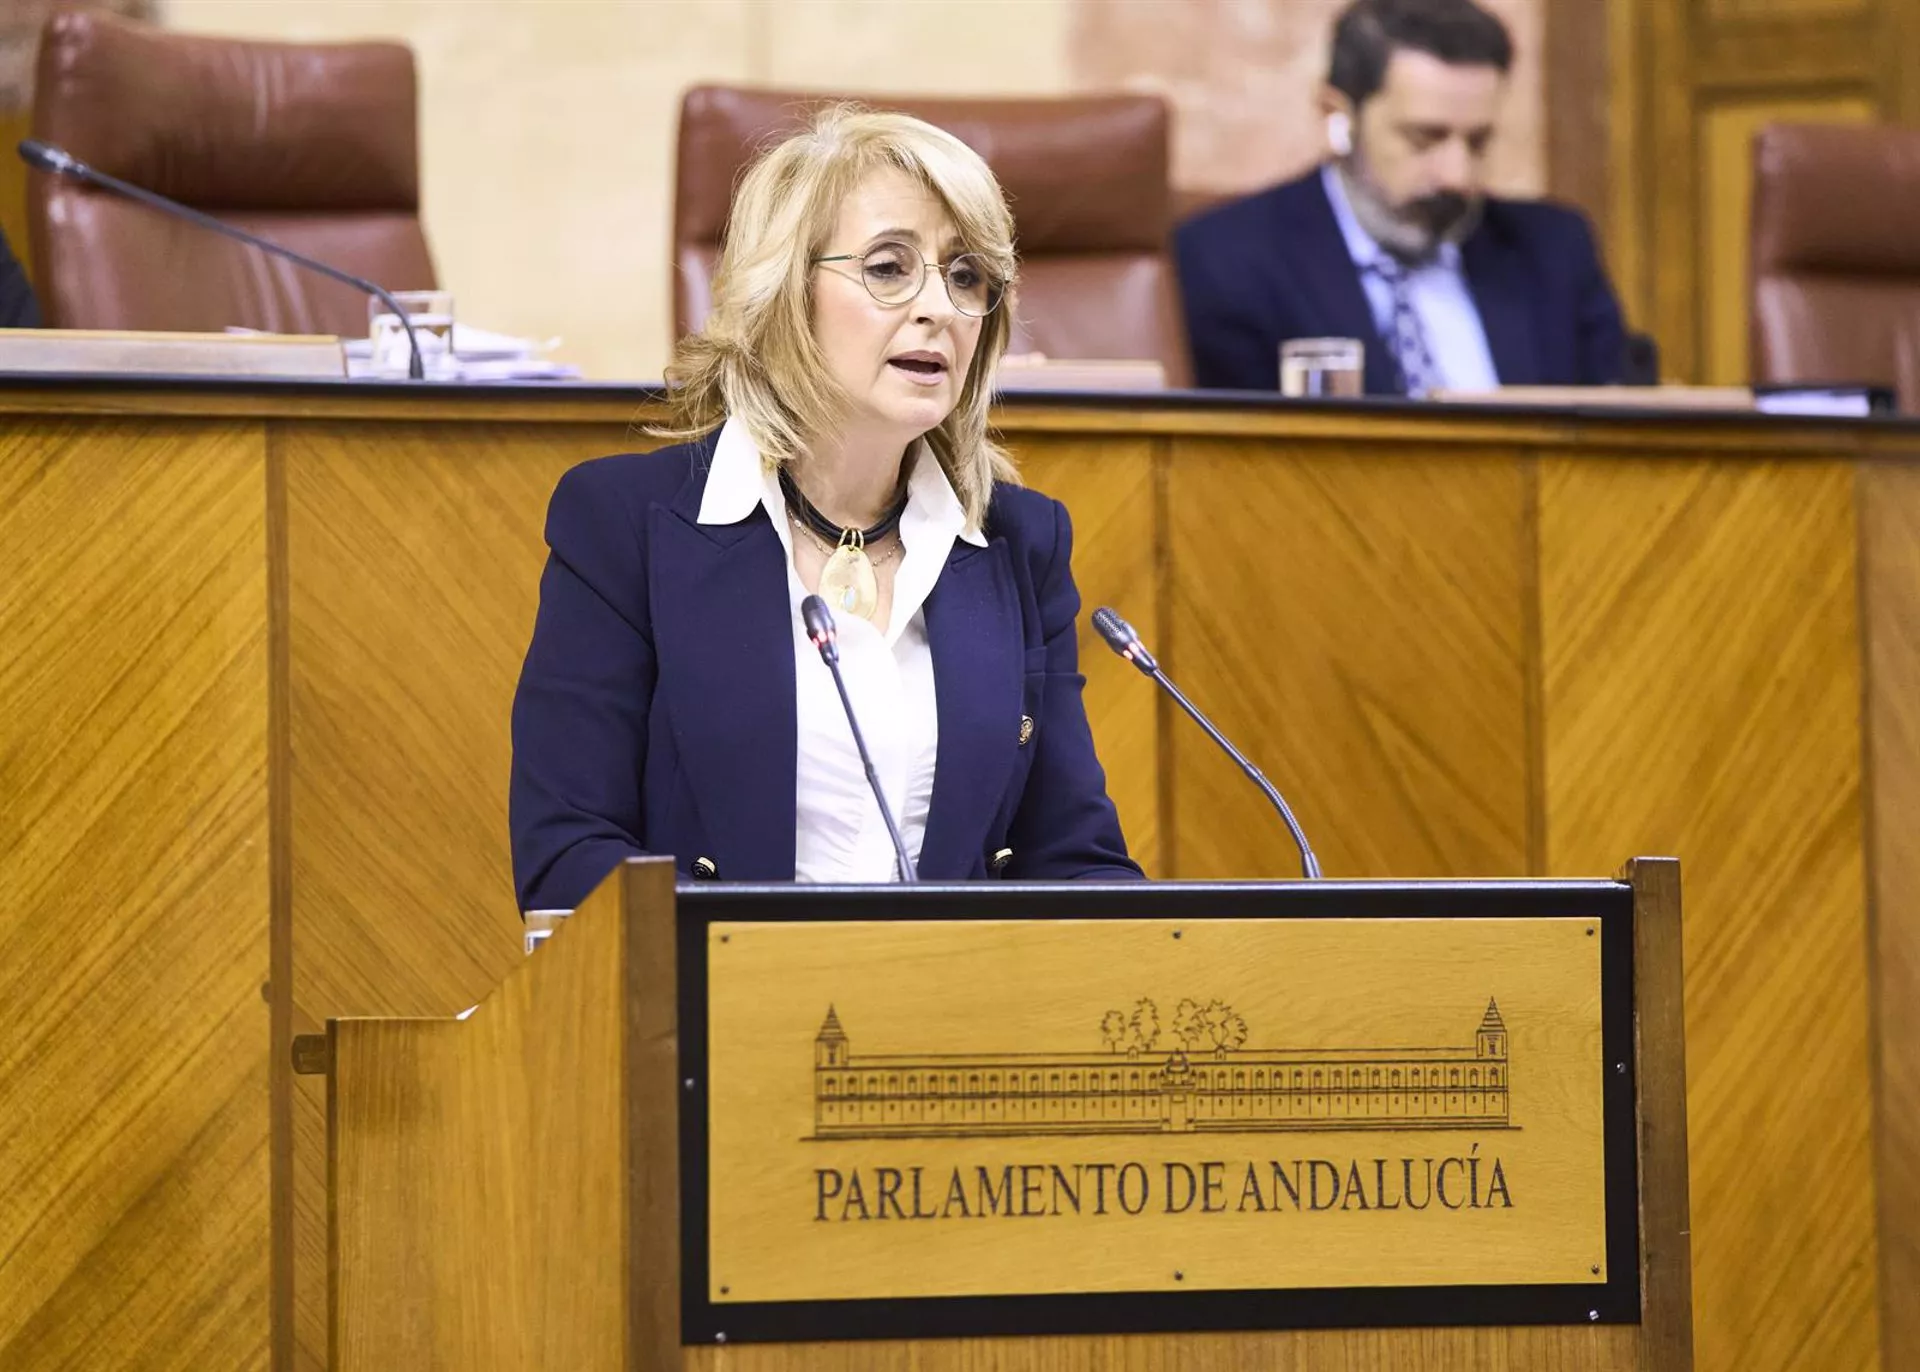 La diputada del PP-A Pilar Pintor interviene en el Pleno del Parlamento andaluz